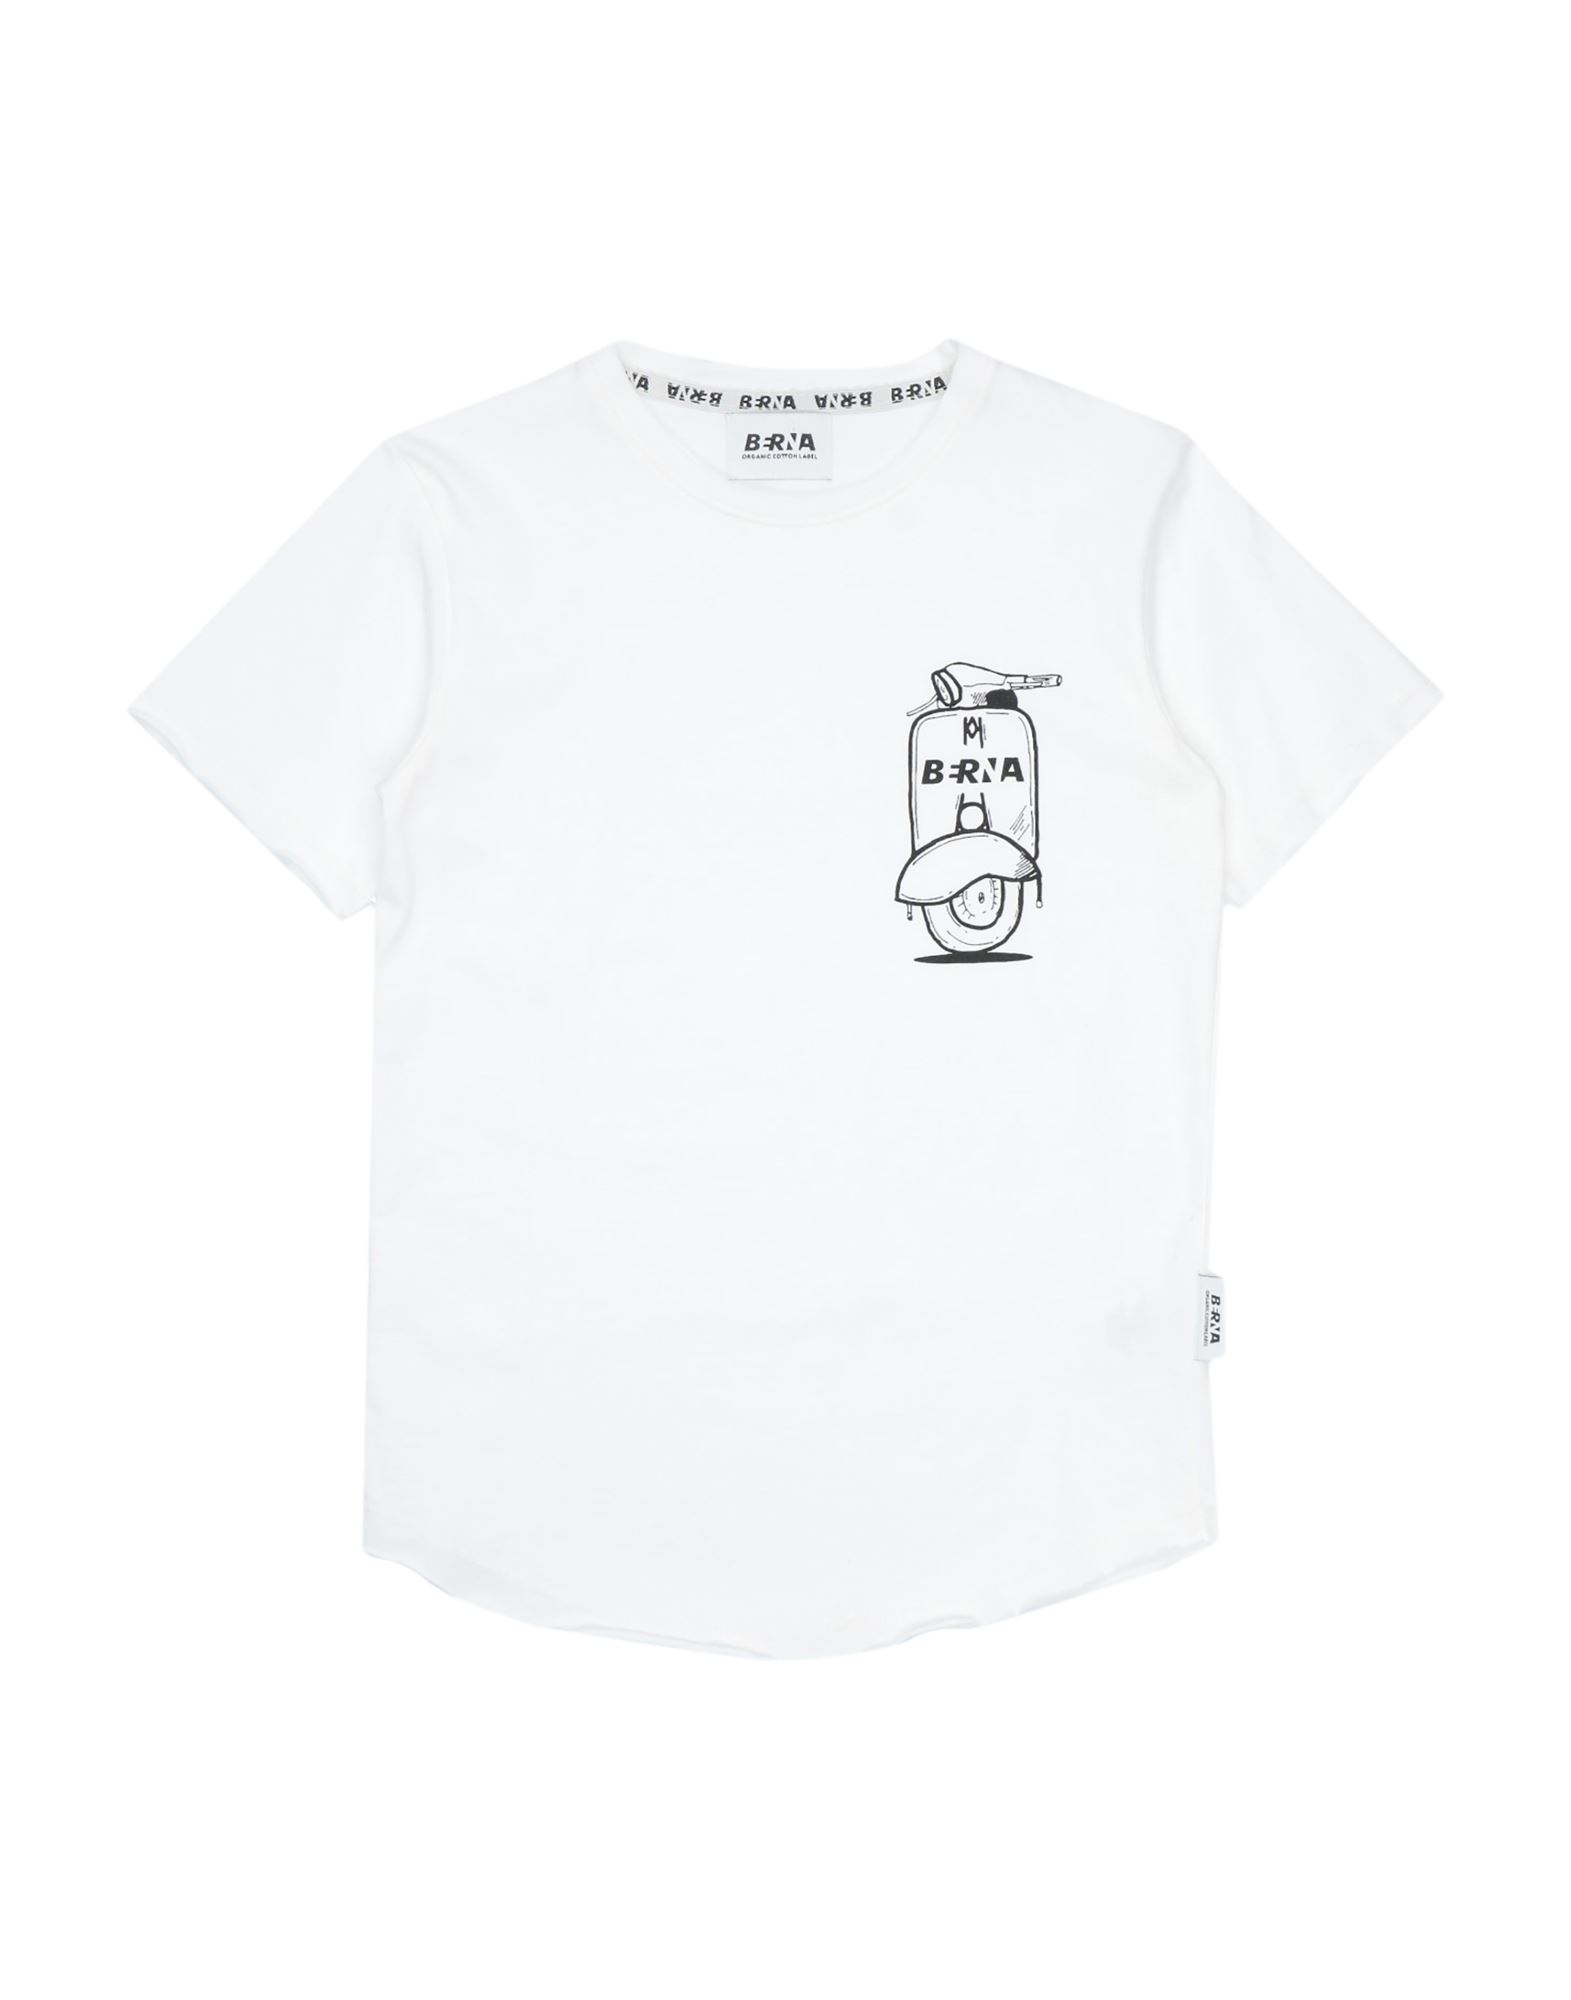 Berna Kids'  T-shirts In White